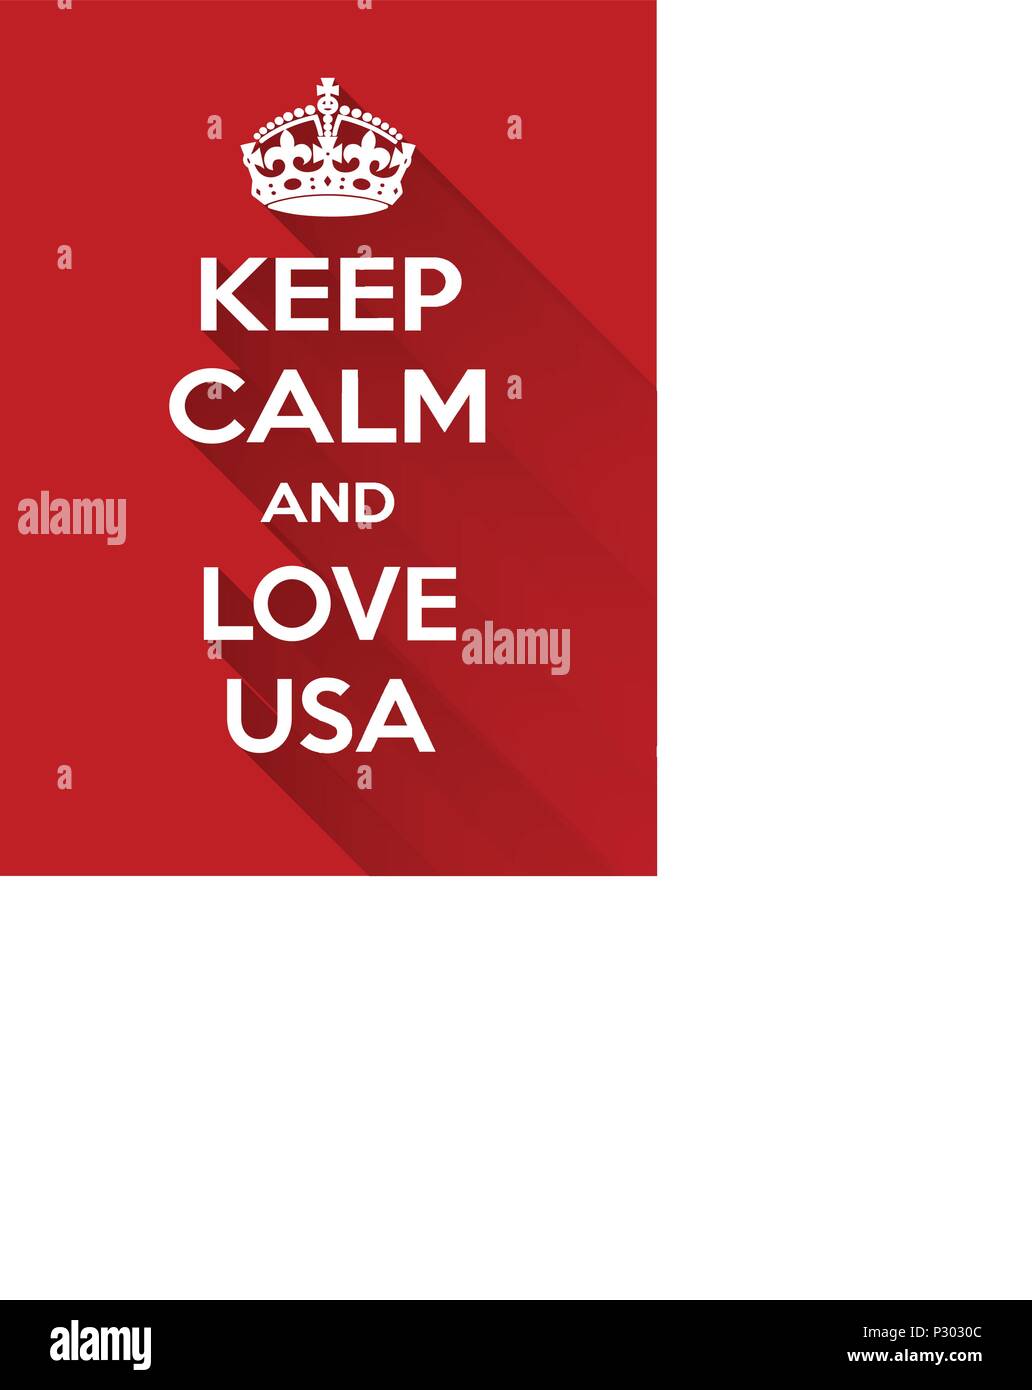 Vertikale rechteckig Rot-weiß die Motivation der Liebe auf usa Poster im Vintage Retro Stil basierte clam Halten Stock Vektor